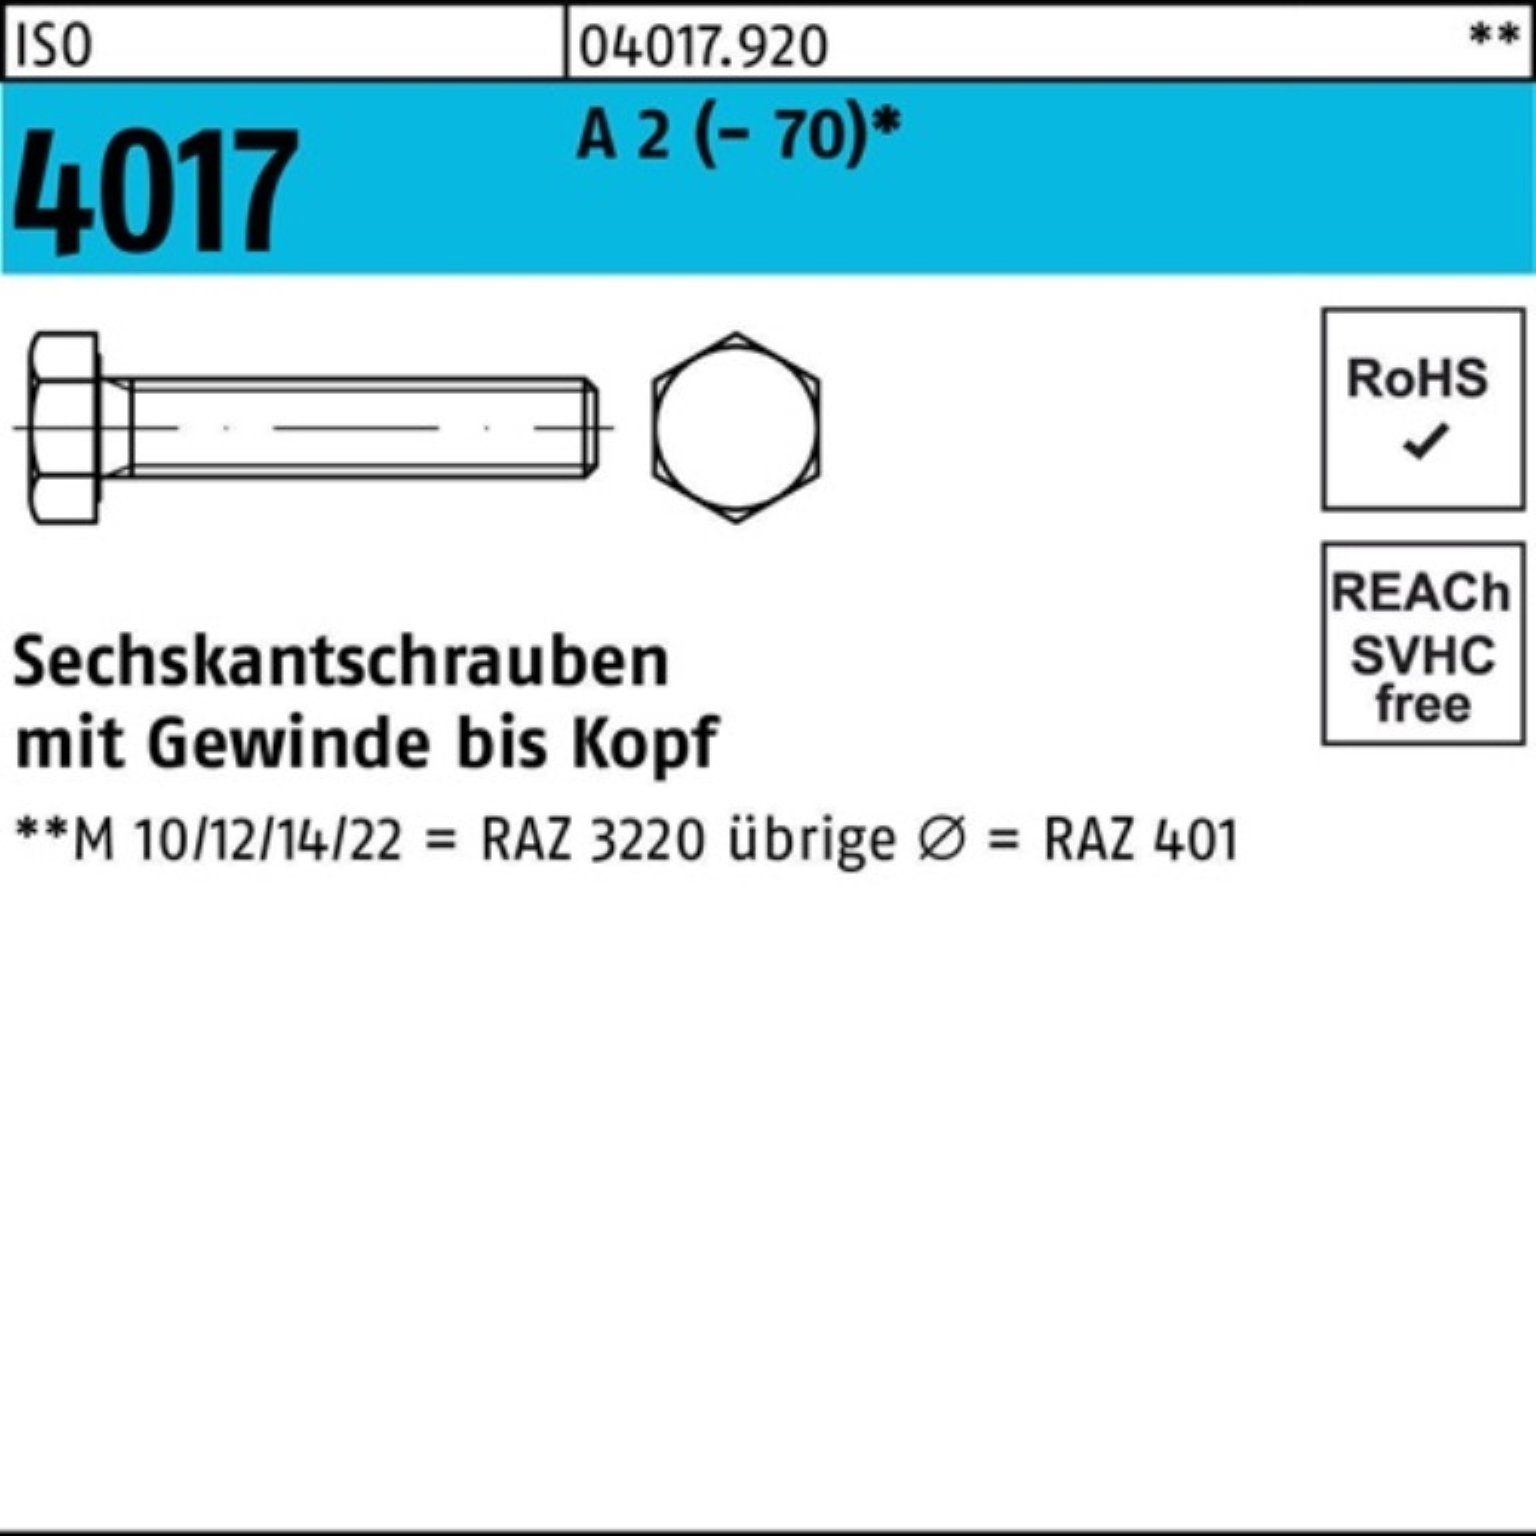 Bufab Sechskantschraube 100er Pack Sechskantschraube ISO 4017 VG M27x 150 A 2 (70) 1 Stück